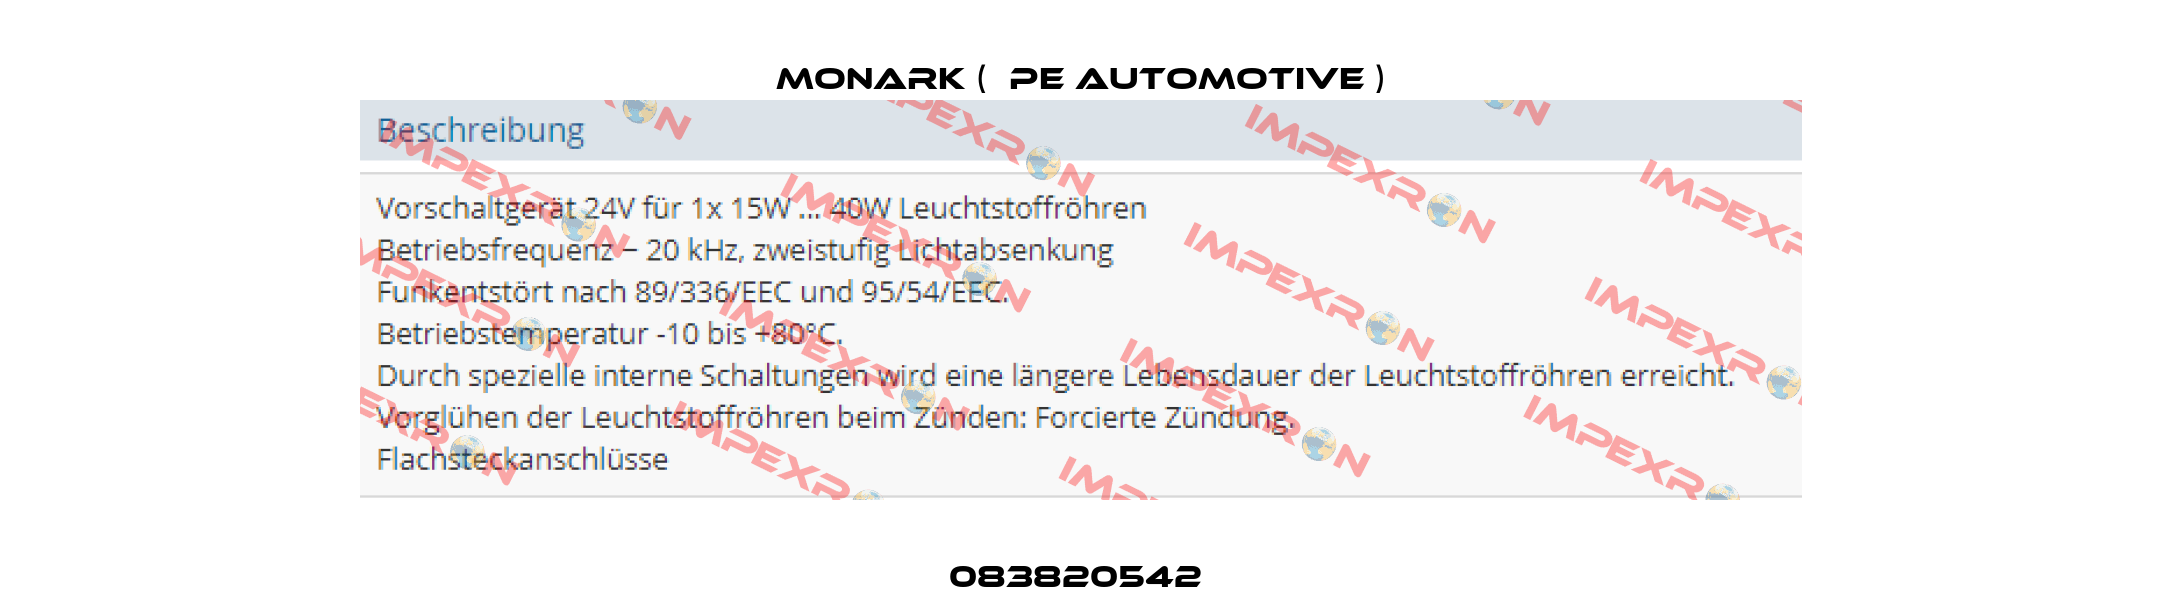 083820542  Monark (  PE Automotive )